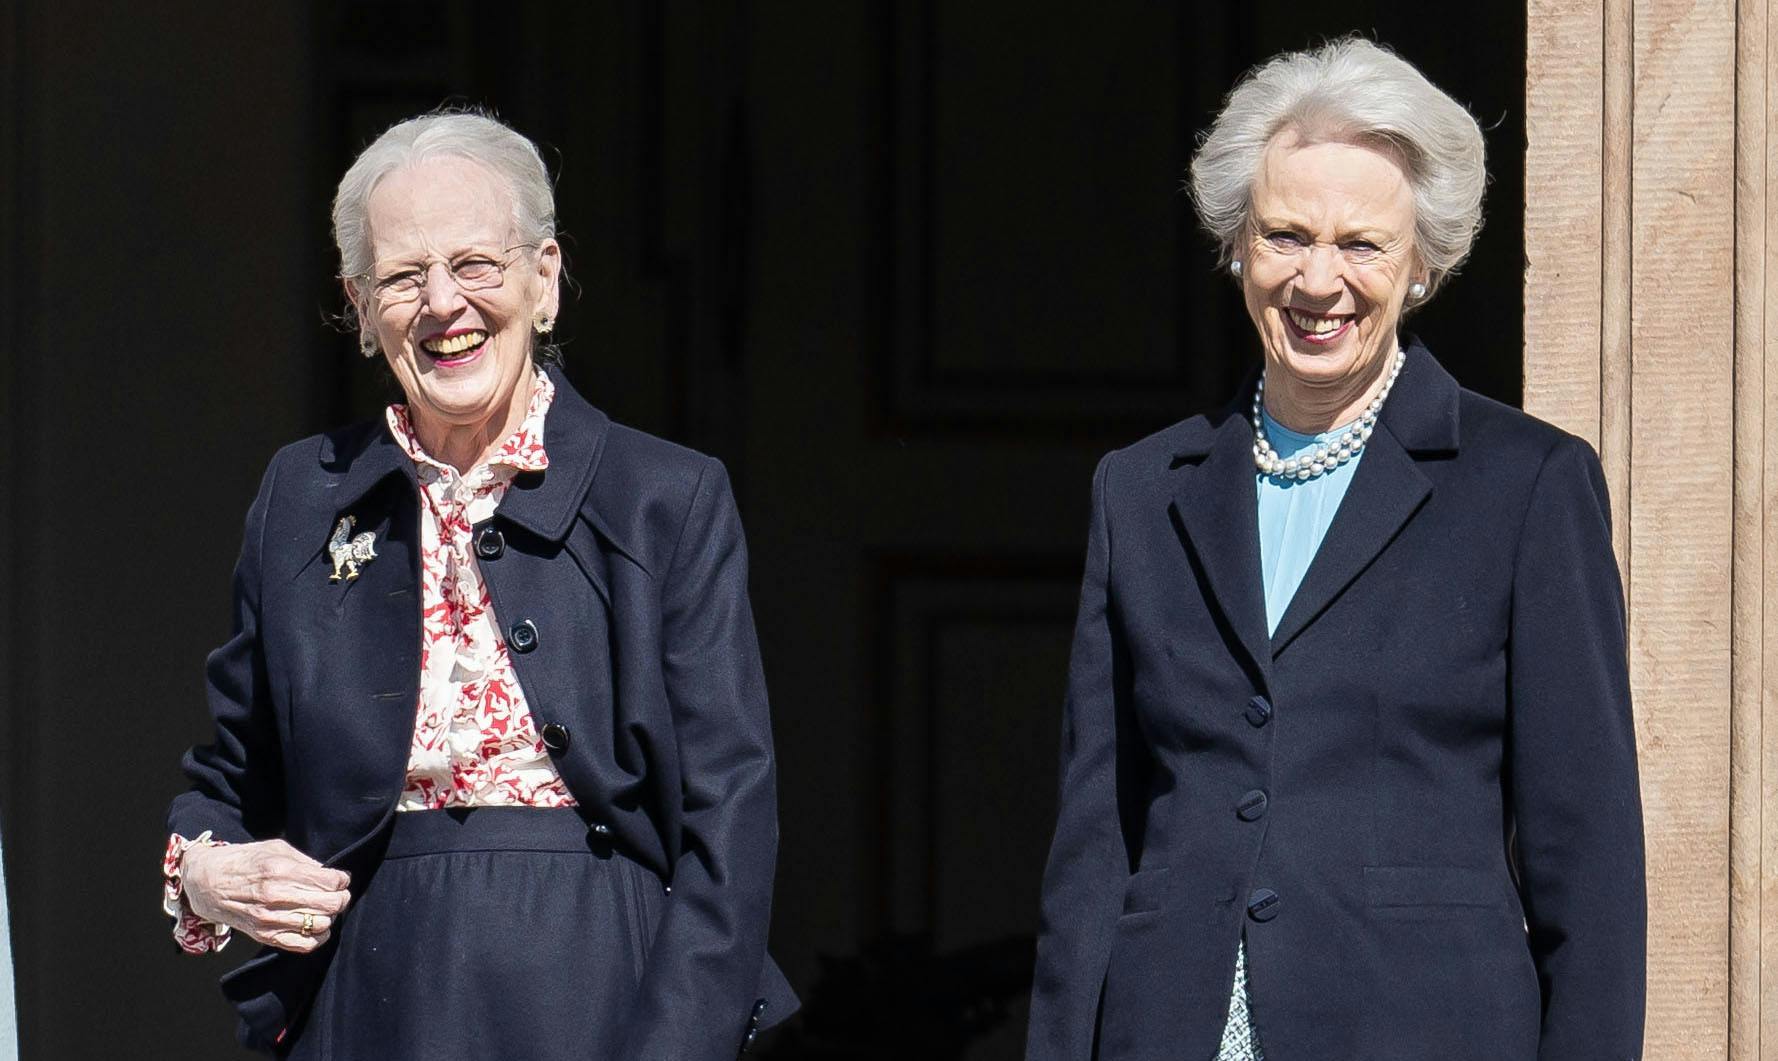 Her ses prinsesse Benedikte til dronning Margrethes 84-års fødselsdag den 16. april. Den 29. april fylder prinsesse Benedikte 80 år. 